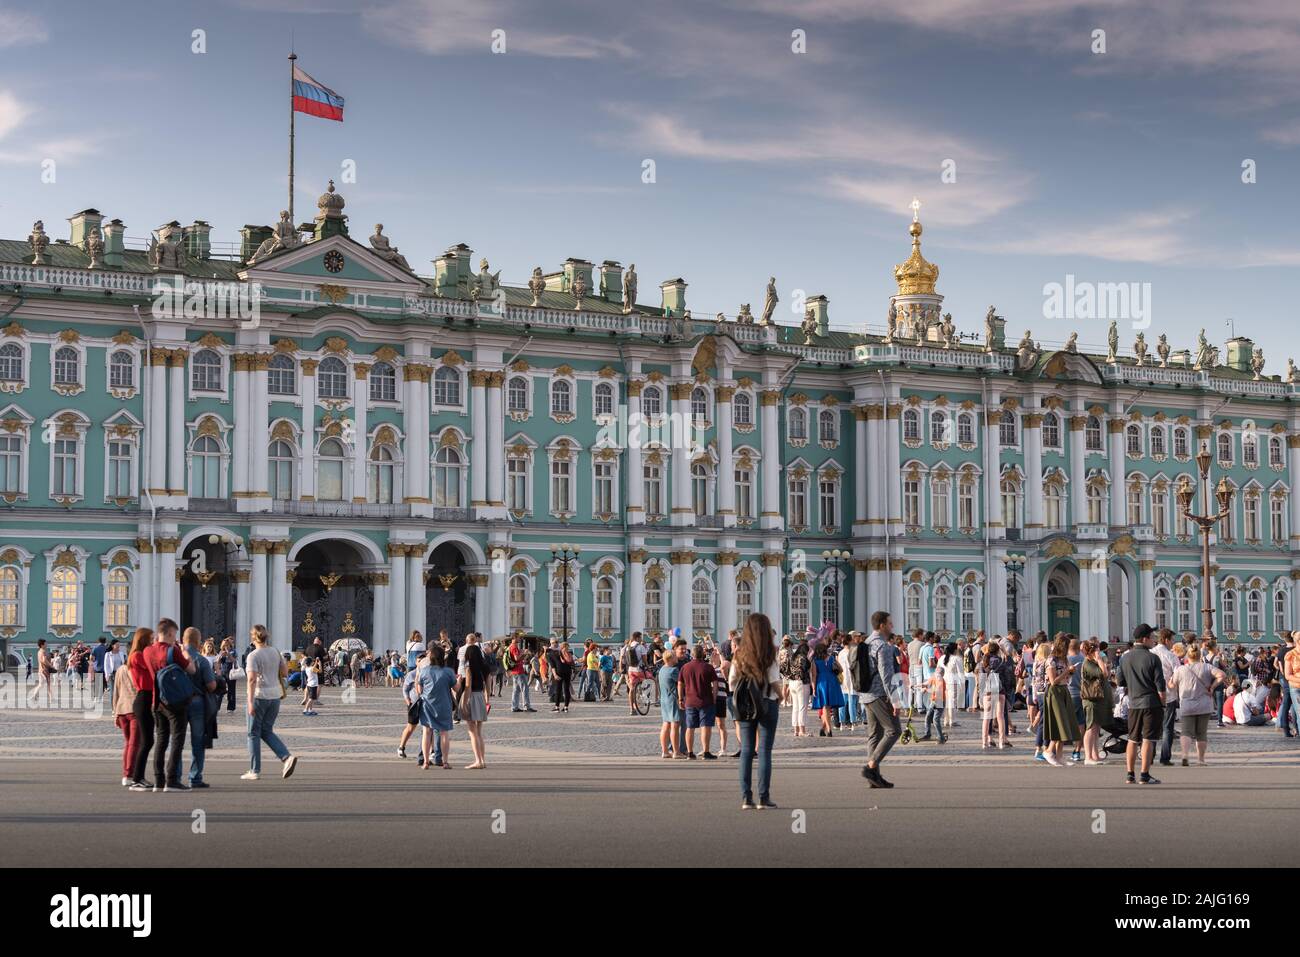 San Petersburgo, Rusia: la gente en la plaza del palacio en frente del Museo del Hermitage (Palacio de Invierno), el segundo museo de arte más grande del mundo Foto de stock